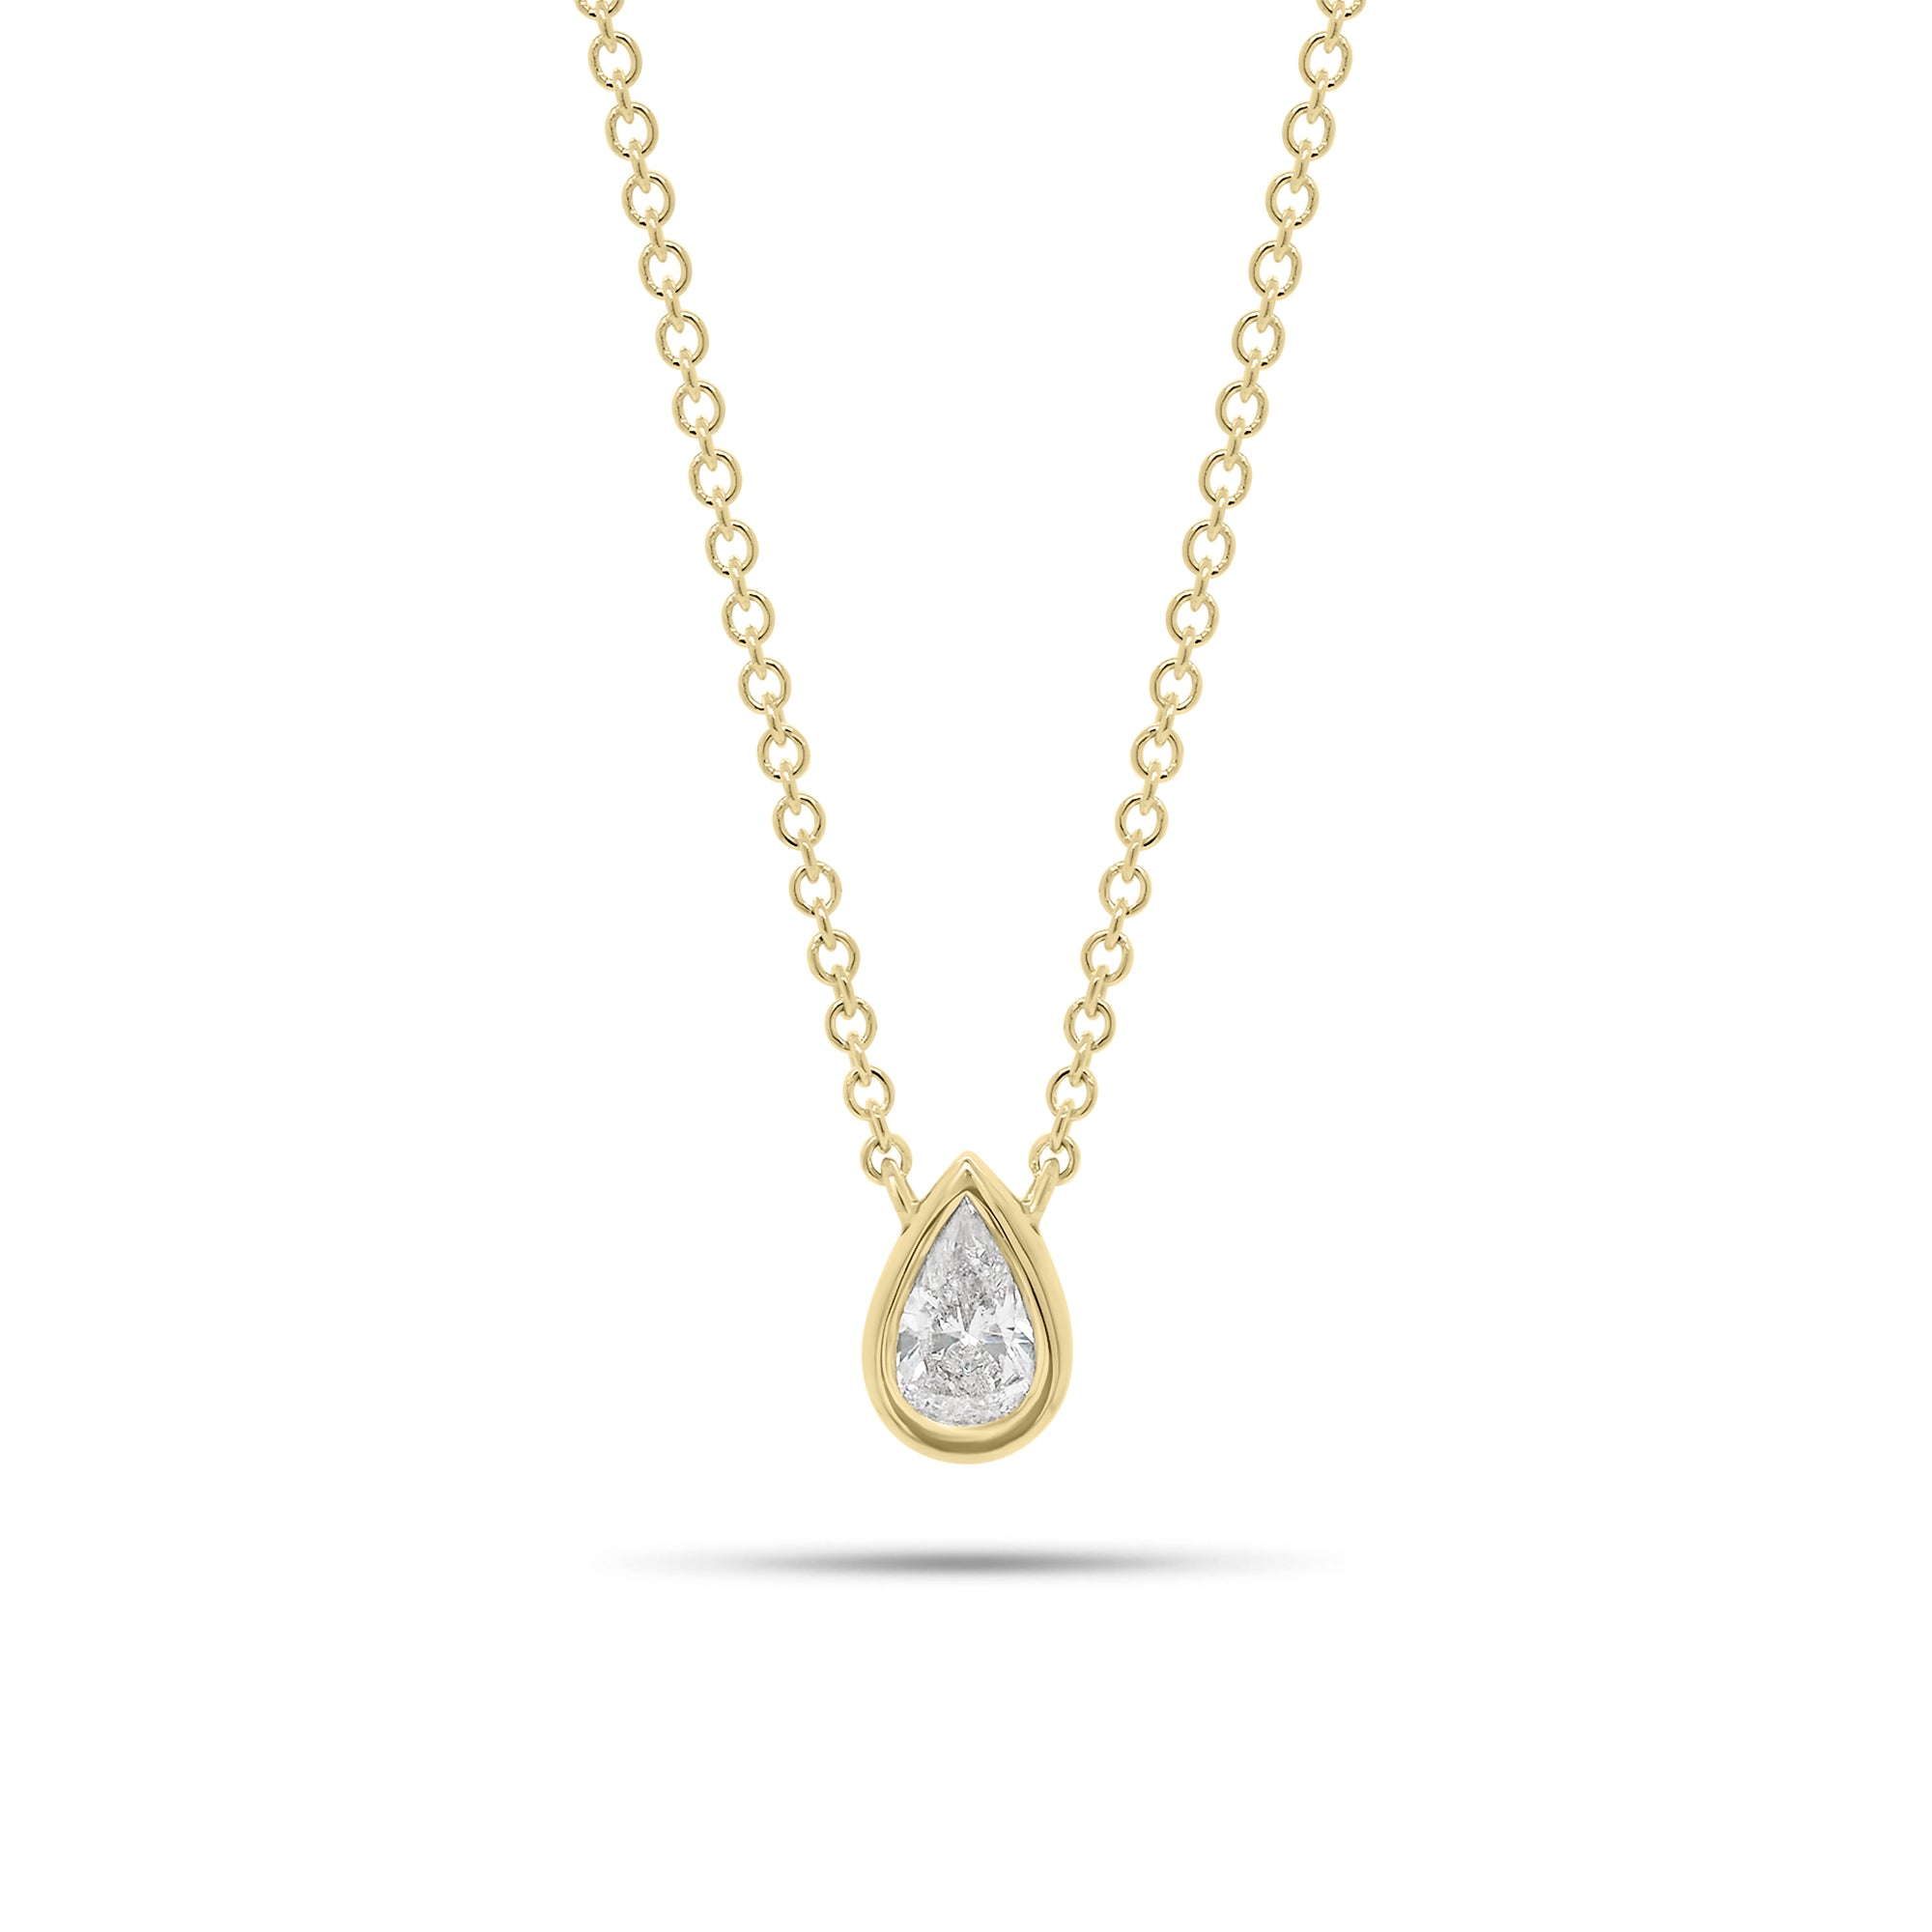 0.33 ct Pear-Shaped Bezel-Set Diamond Pendant - 14K gold weighing 2.25 grams  - 0.33 ct pear-shaped diamond